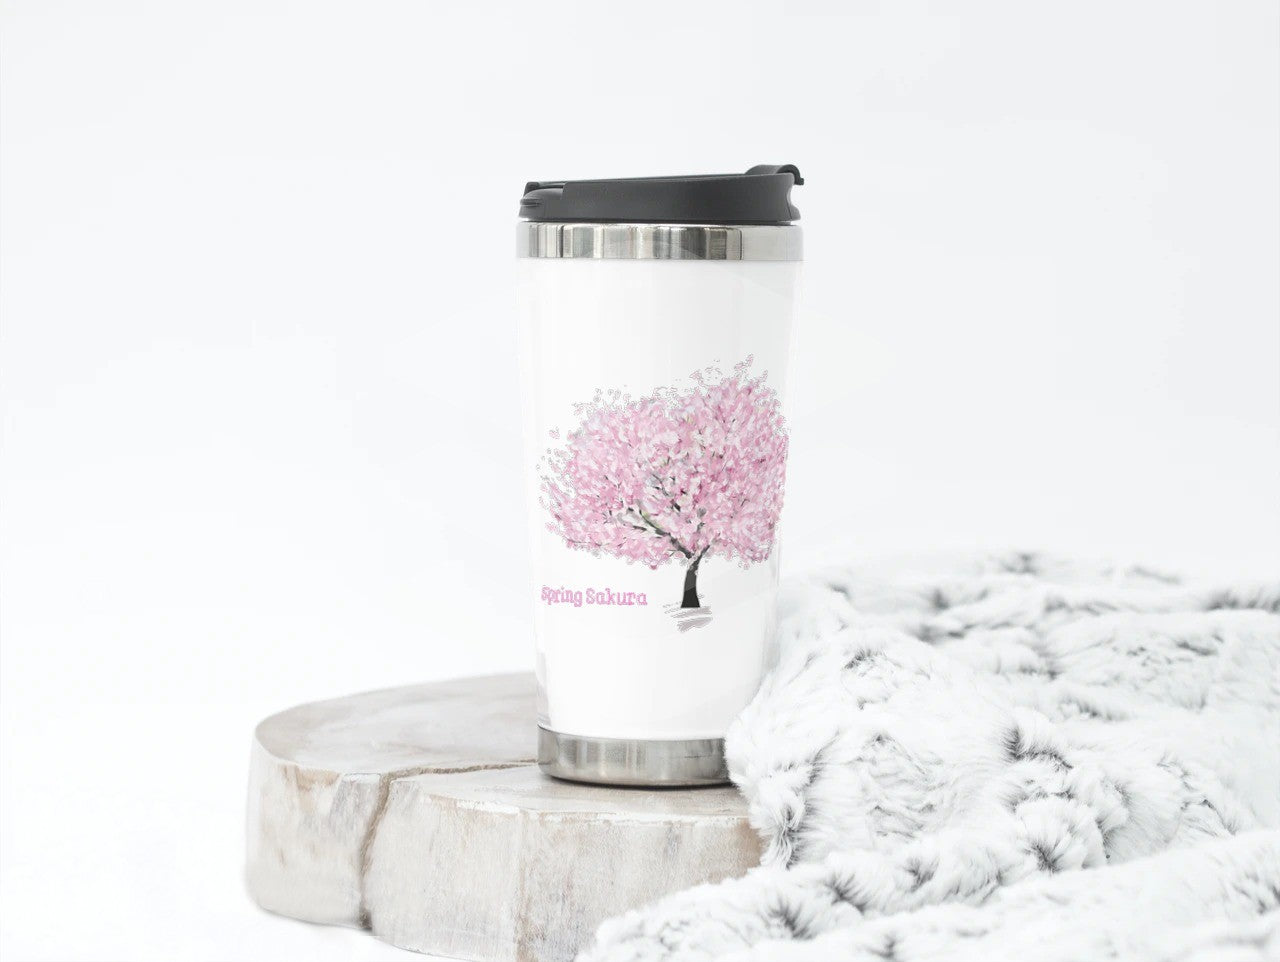 💮 Stainless Steel Sakura Travel Mug